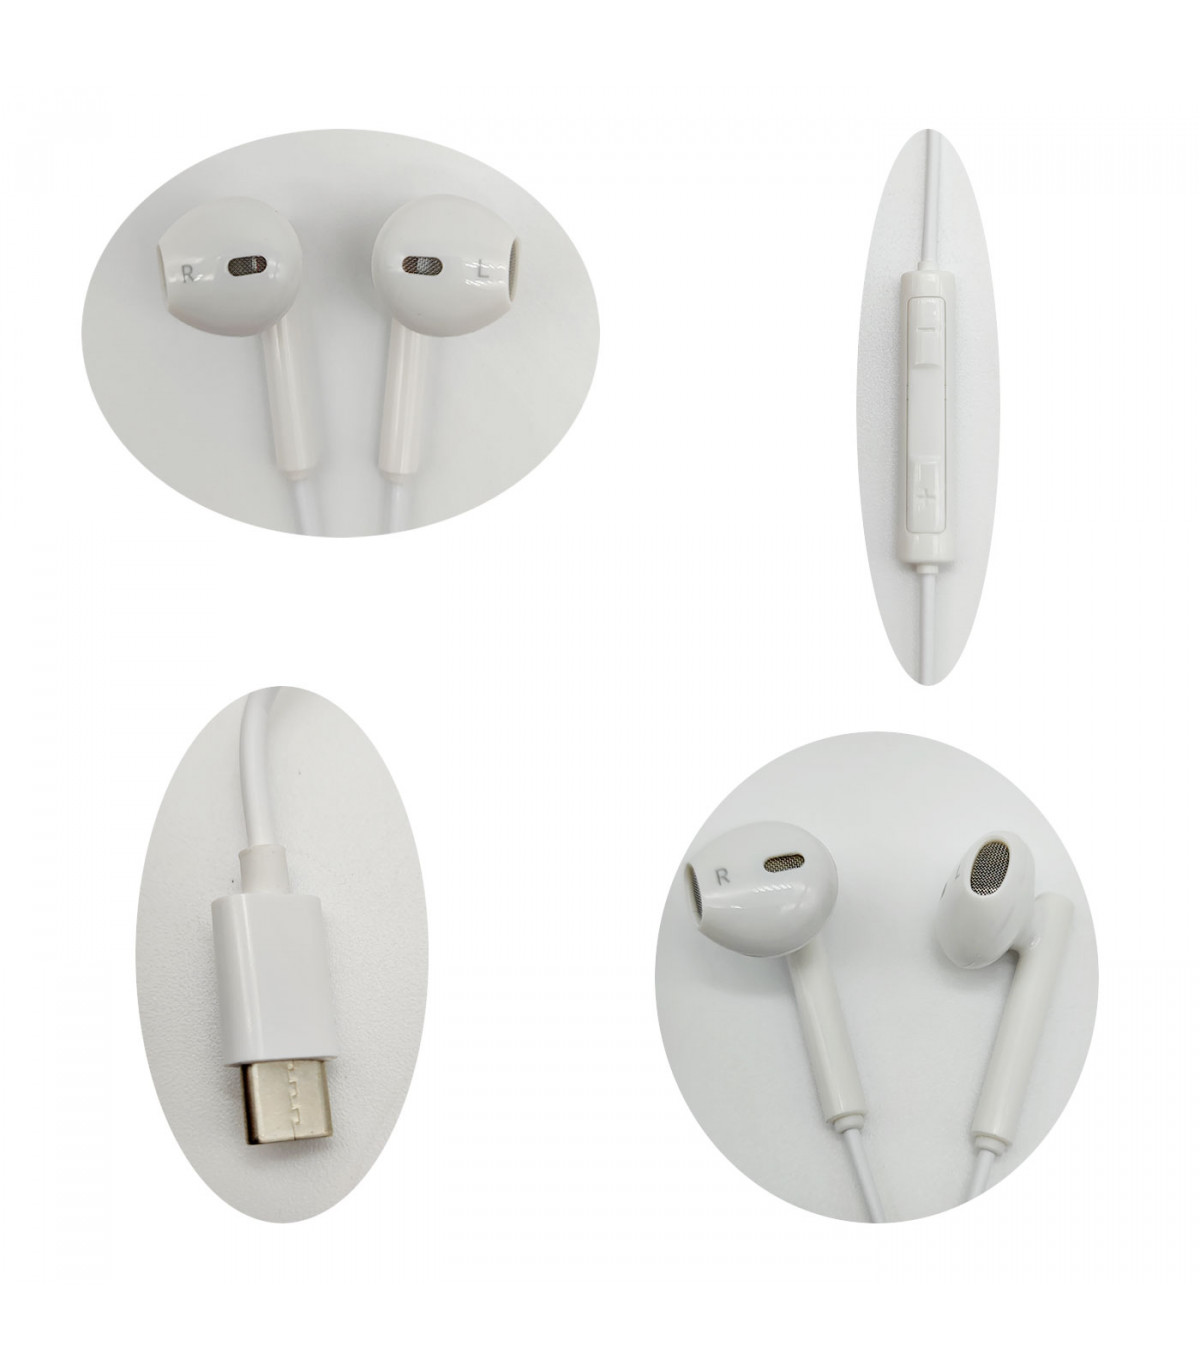 Auriculares para móvil, sonido estéreo, micrófono y cable de 1,2 m,  conexión tipo C, cascos compatibles con Xiaomi, Huawei, Sams